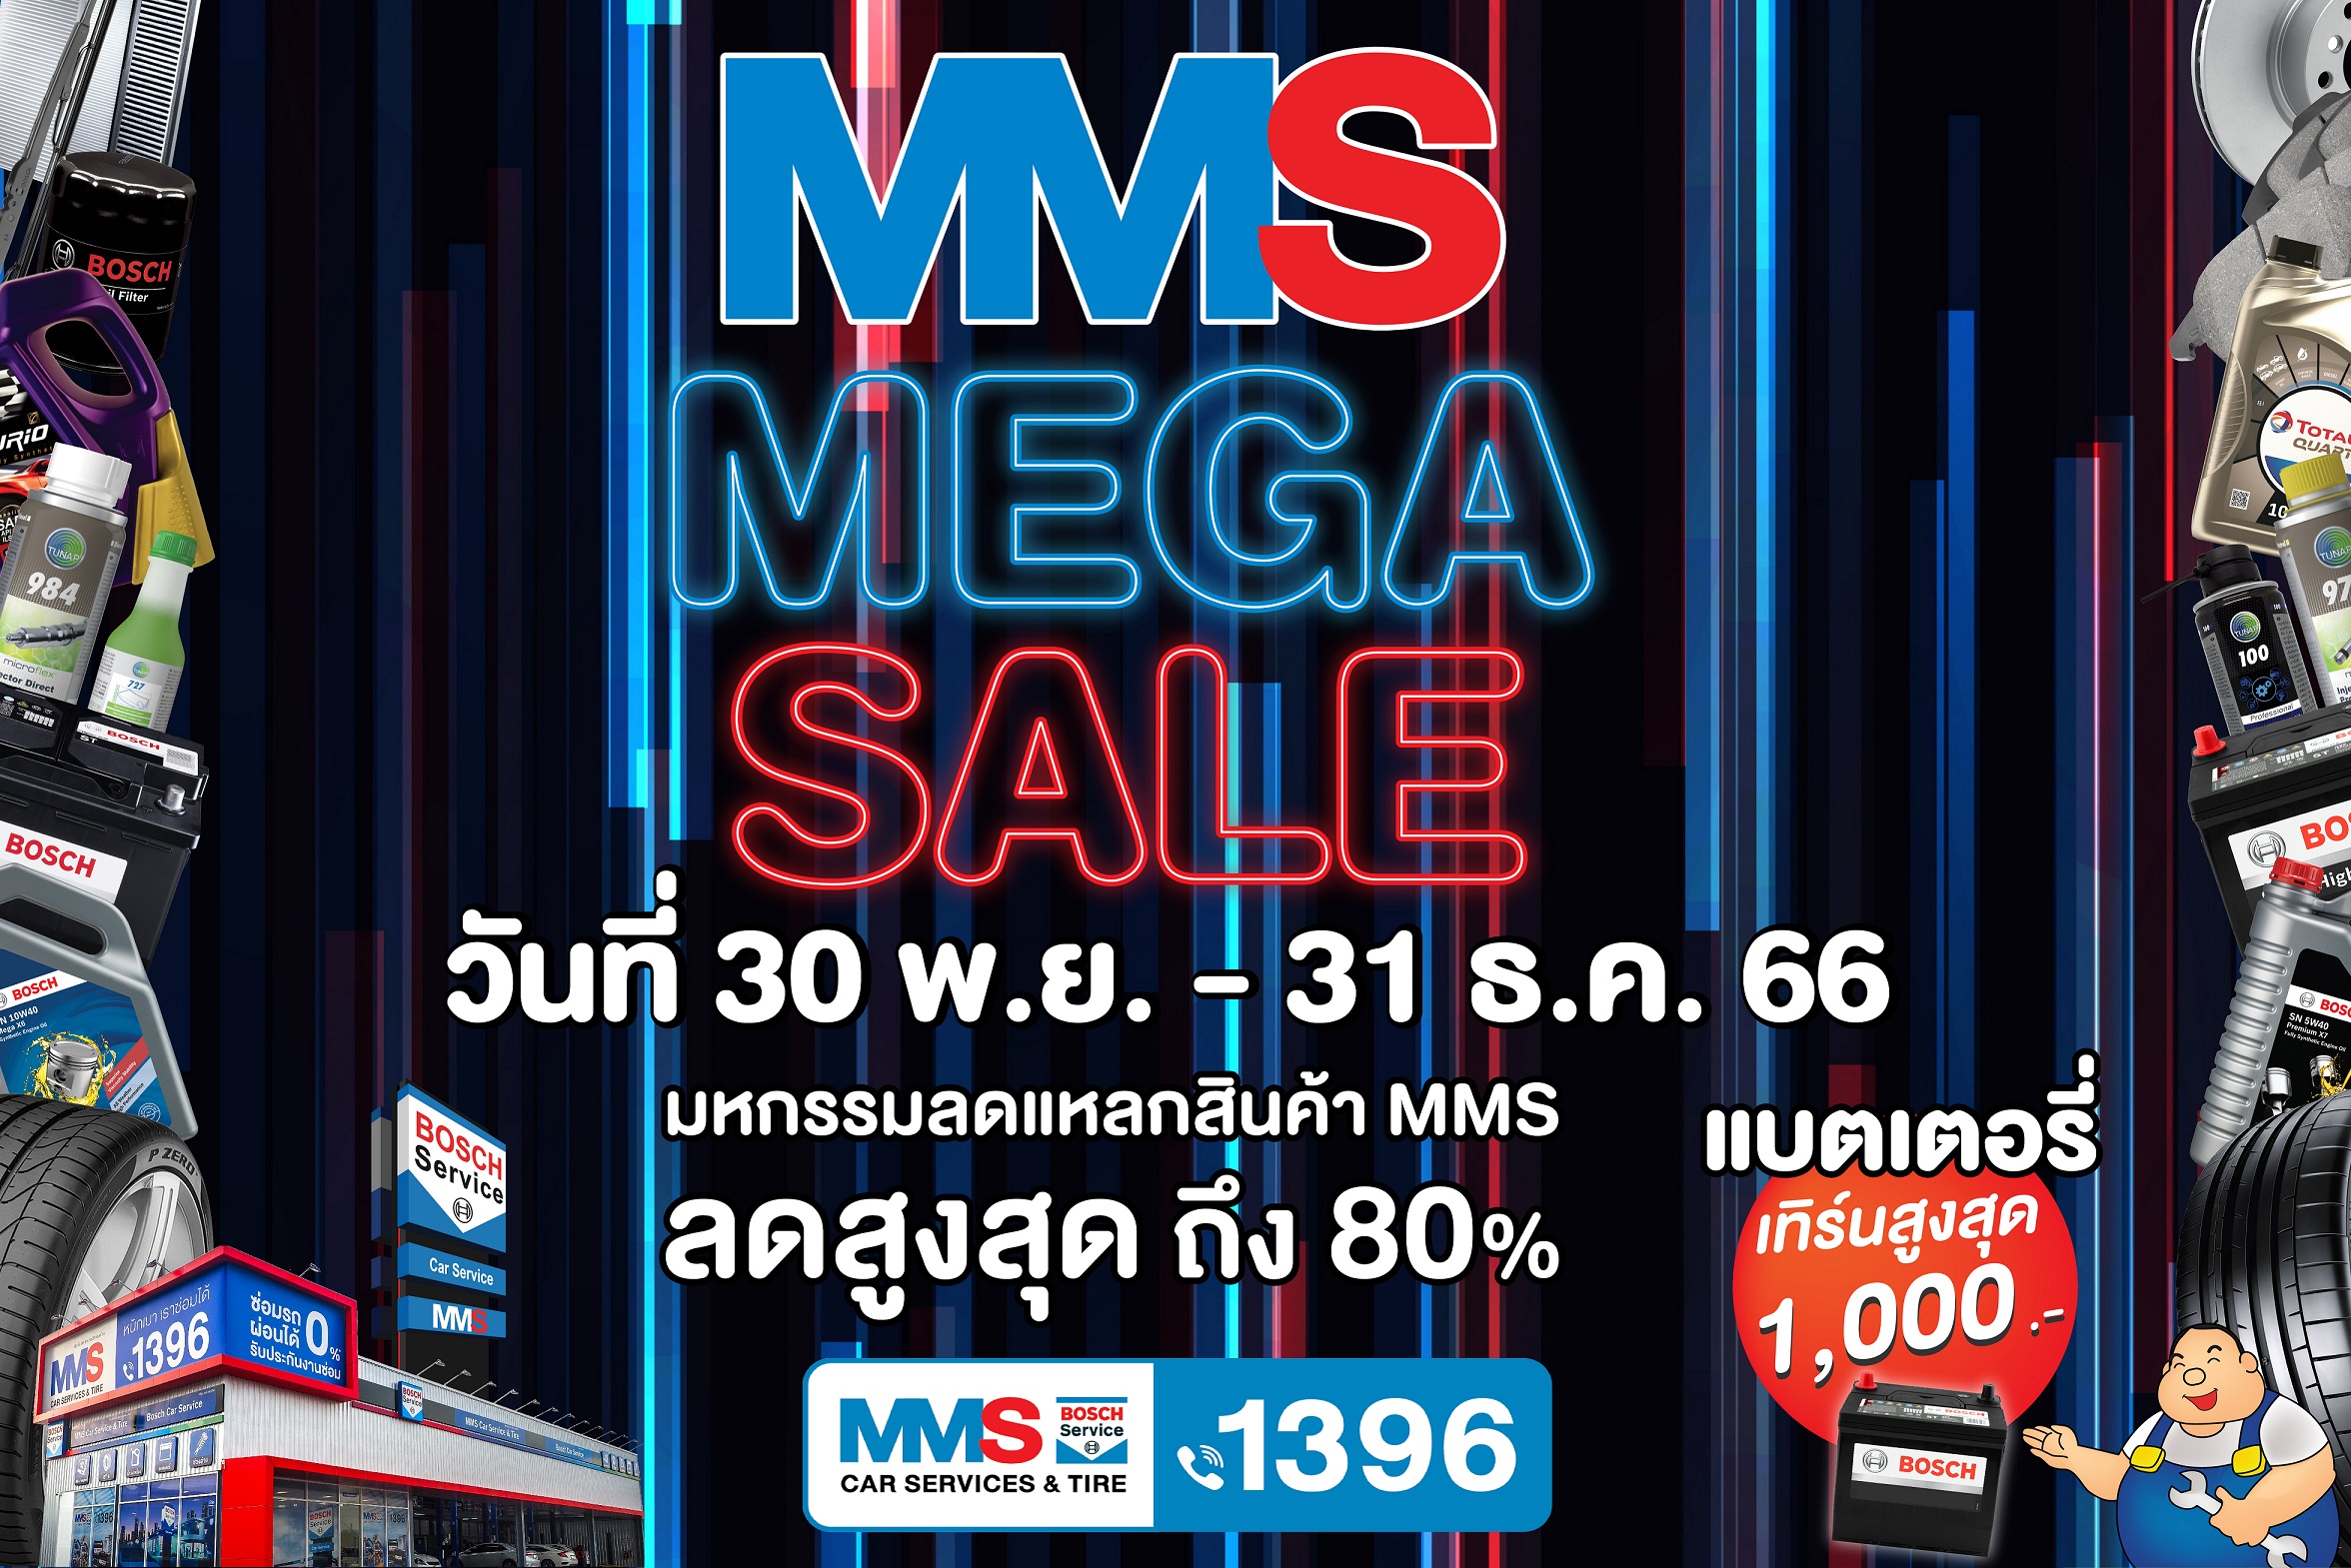 MMS จัดแคมเปญโค้งสุดท้ายปลายปี ‘MMS MEGA SALES’ 